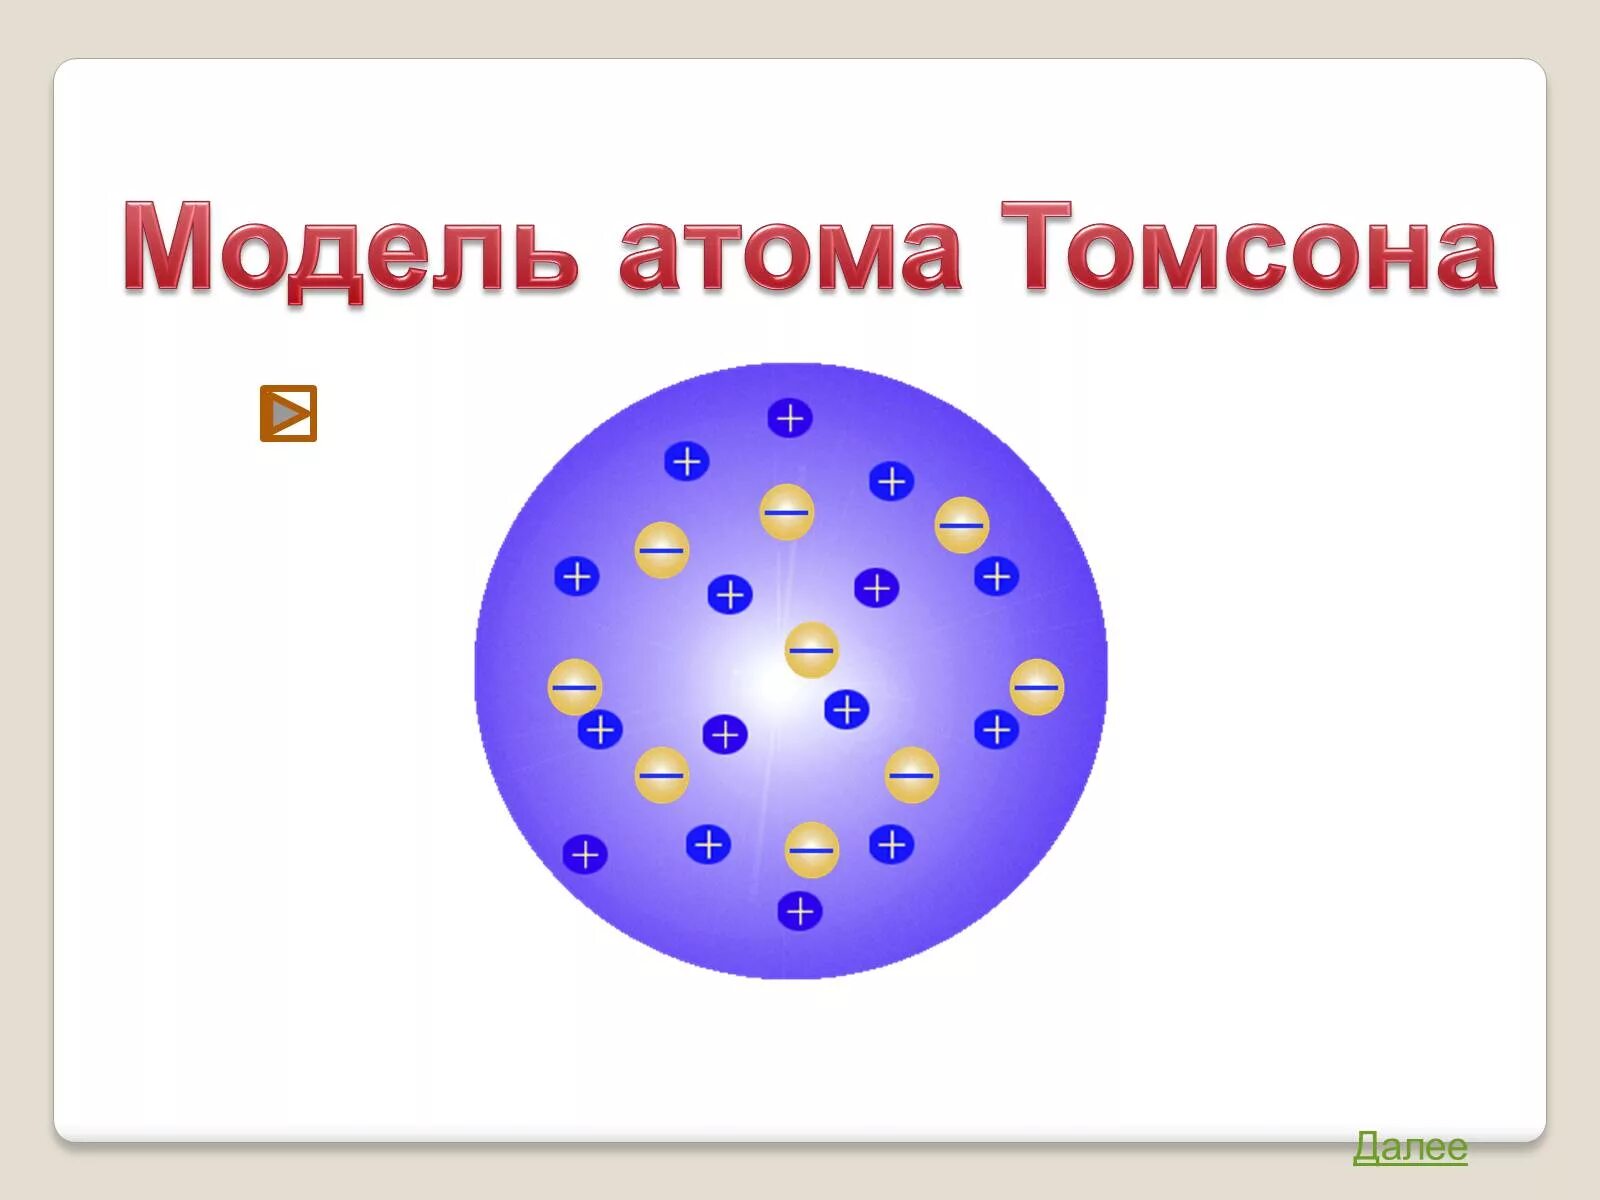 Модели строения атома физика Томпсон. Модель Томсона строение атома. Опыт Томпсона модель атома. Модель атома Томсона физика. Строение атома по томсону